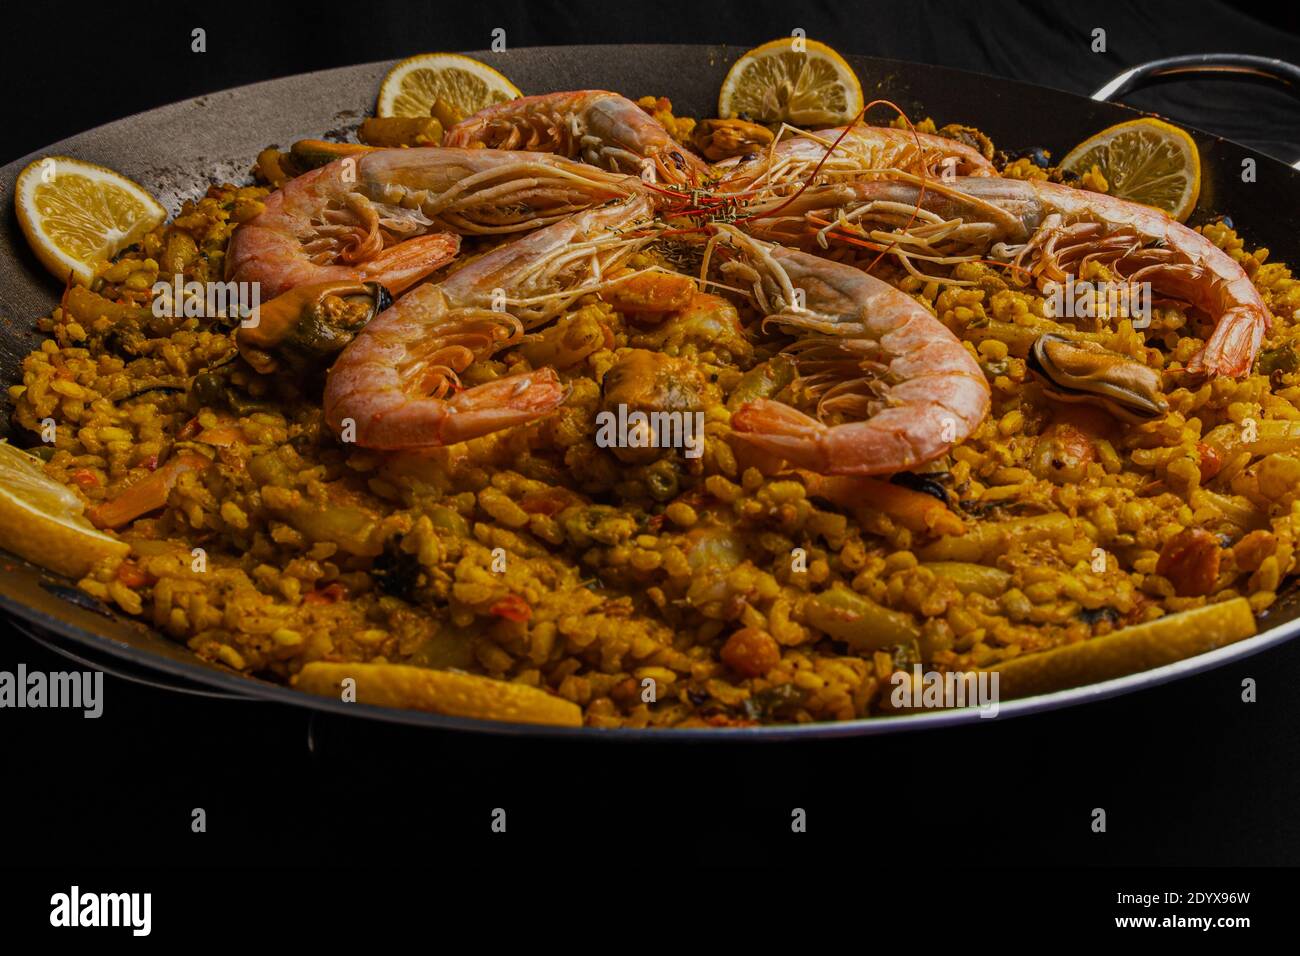 Ein typisch spanisches Paella-Gericht mit Garnelen und Zitrone. Hergestellt nach einem traditionellen Rezept aus Valencia Stockfoto